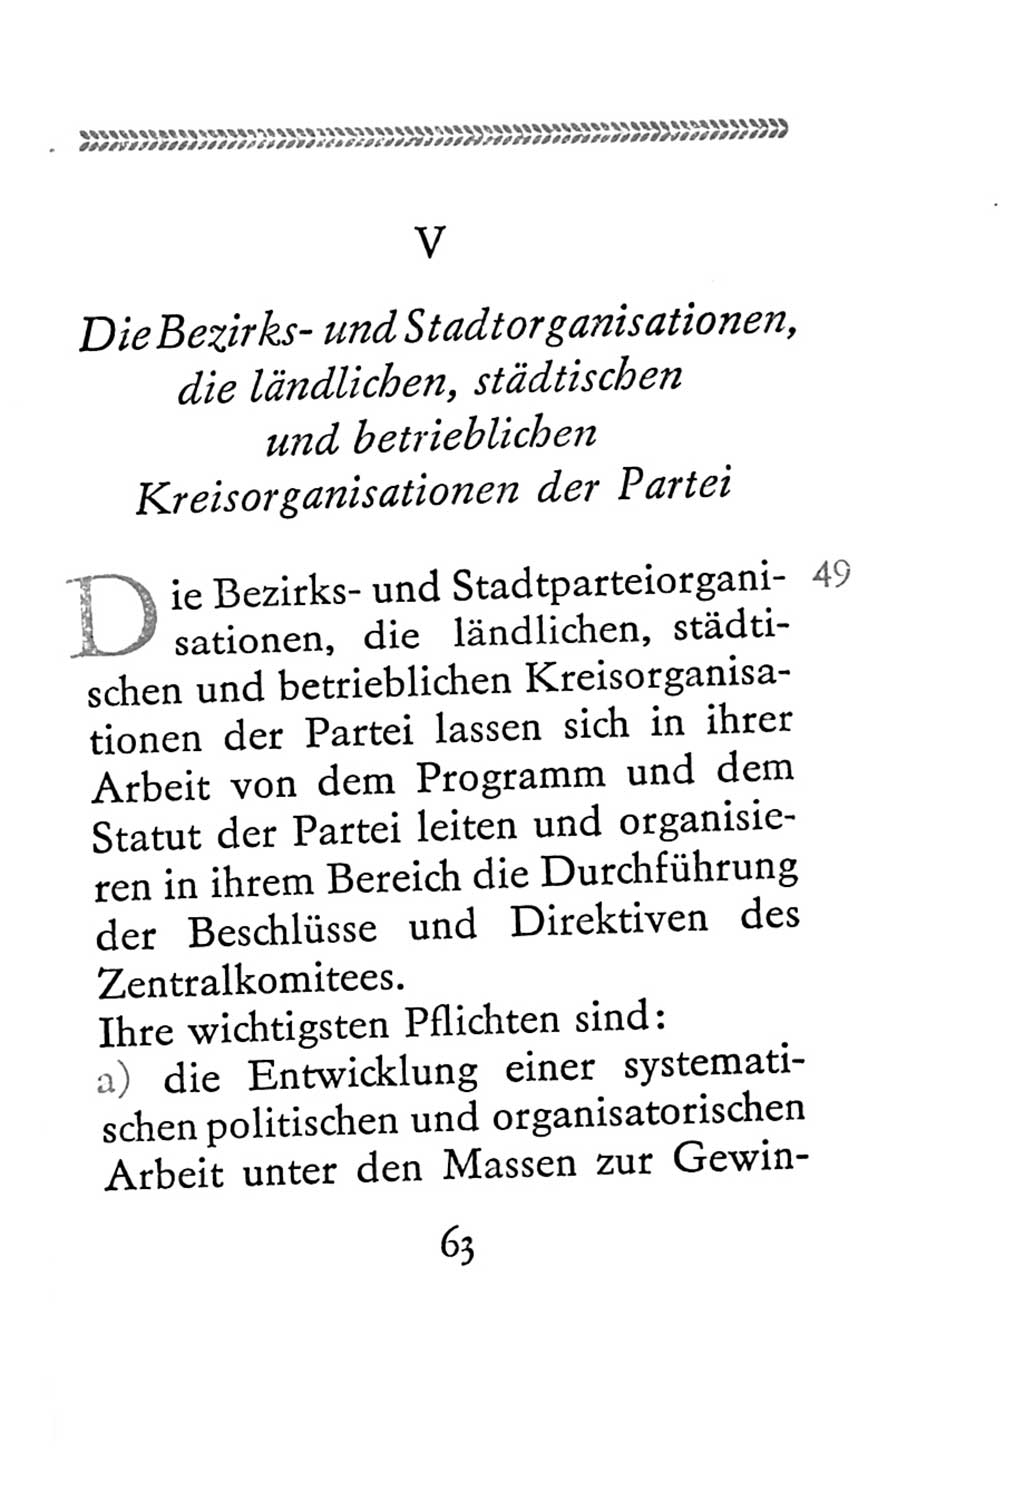 Statut der Sozialistischen Einheitspartei Deutschlands (SED) 1967, Seite 63 (St. SED DDR 1967, S. 63)